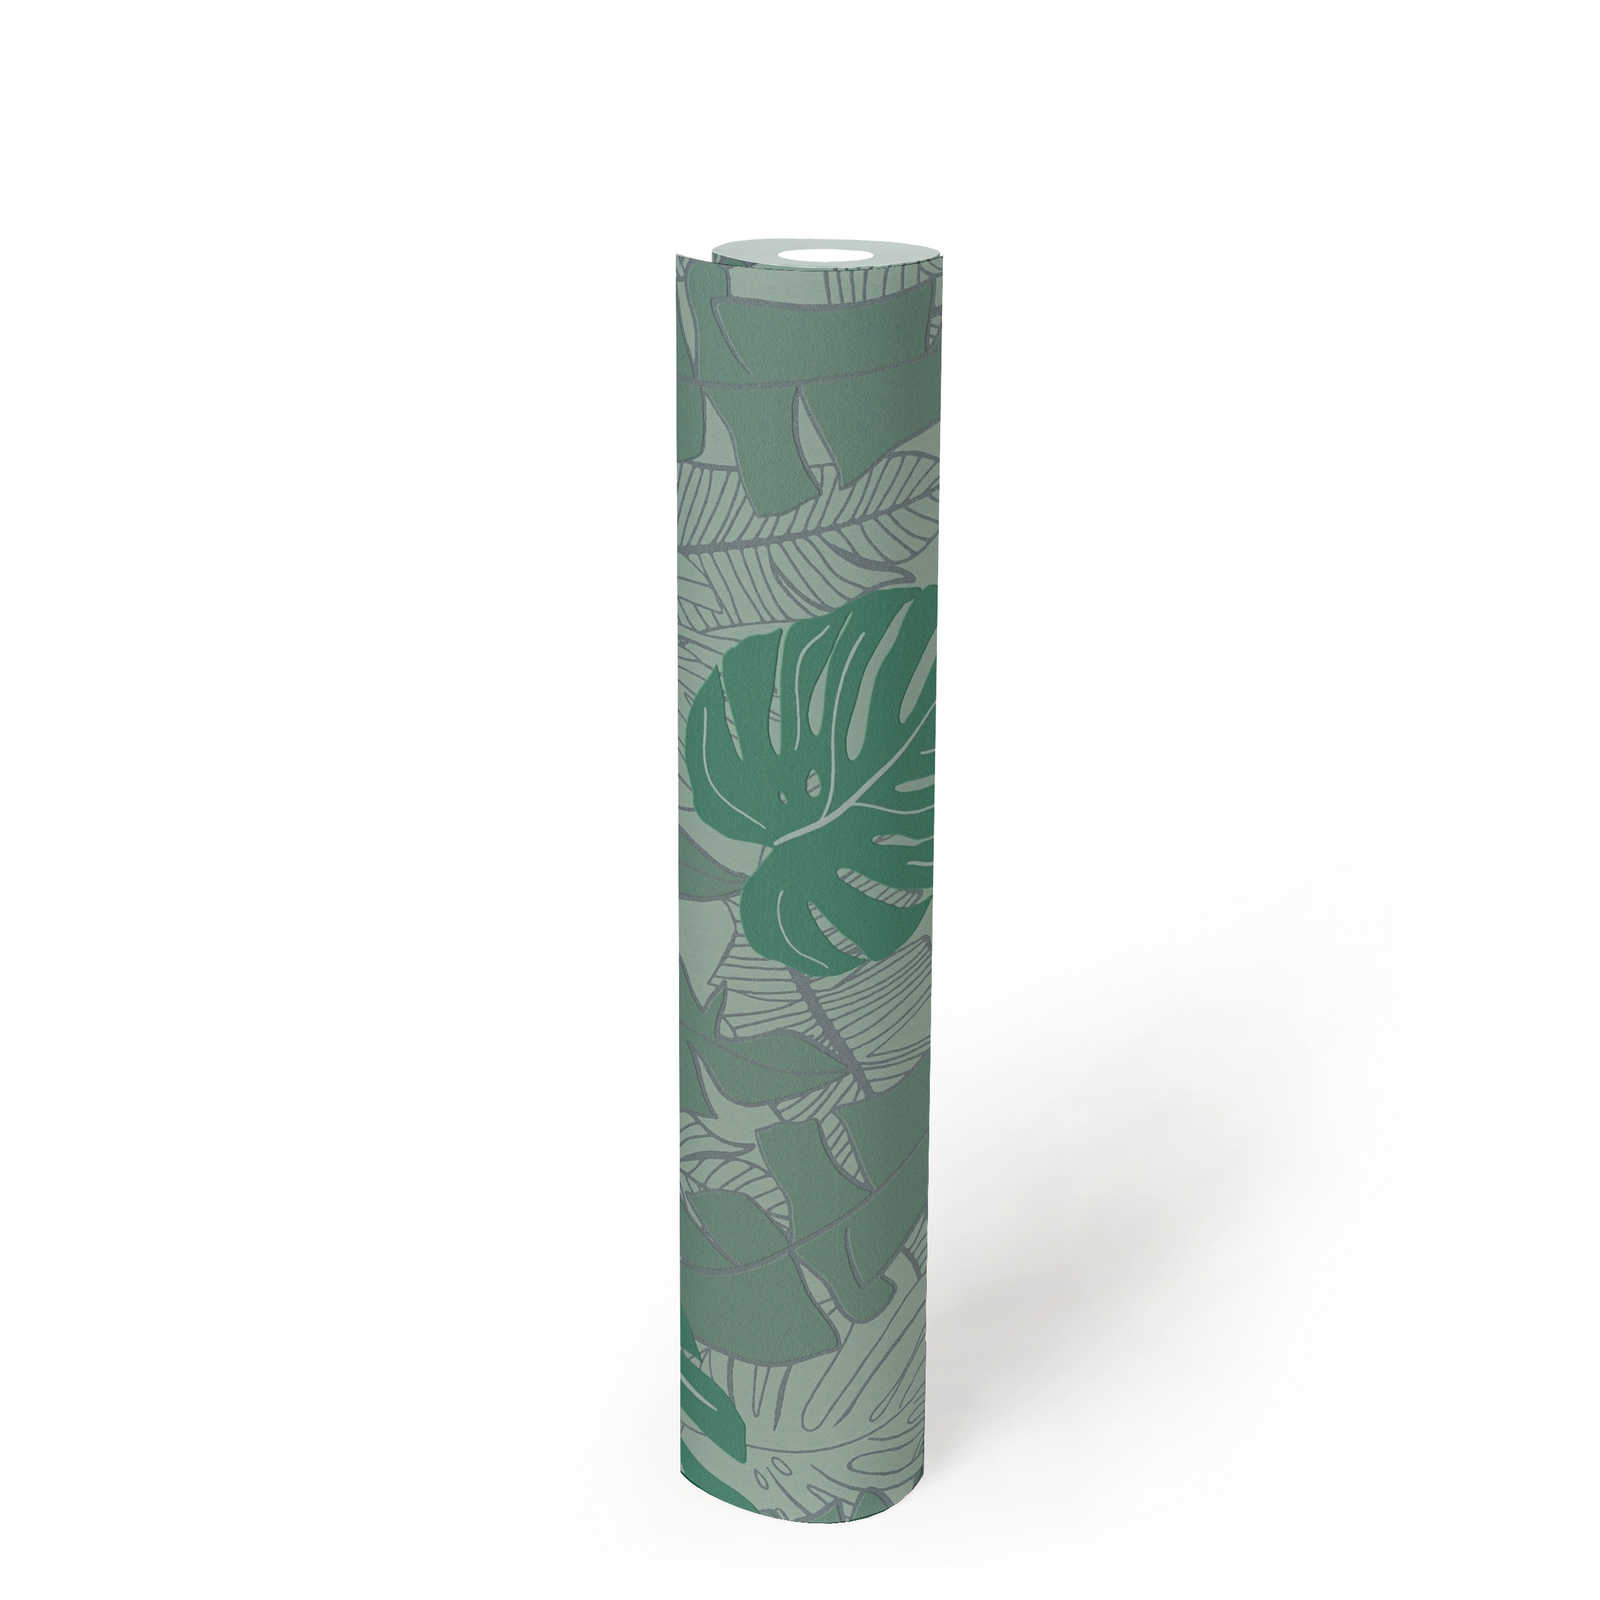             Jungle behang met glanzend patroon - groen, metallic
        